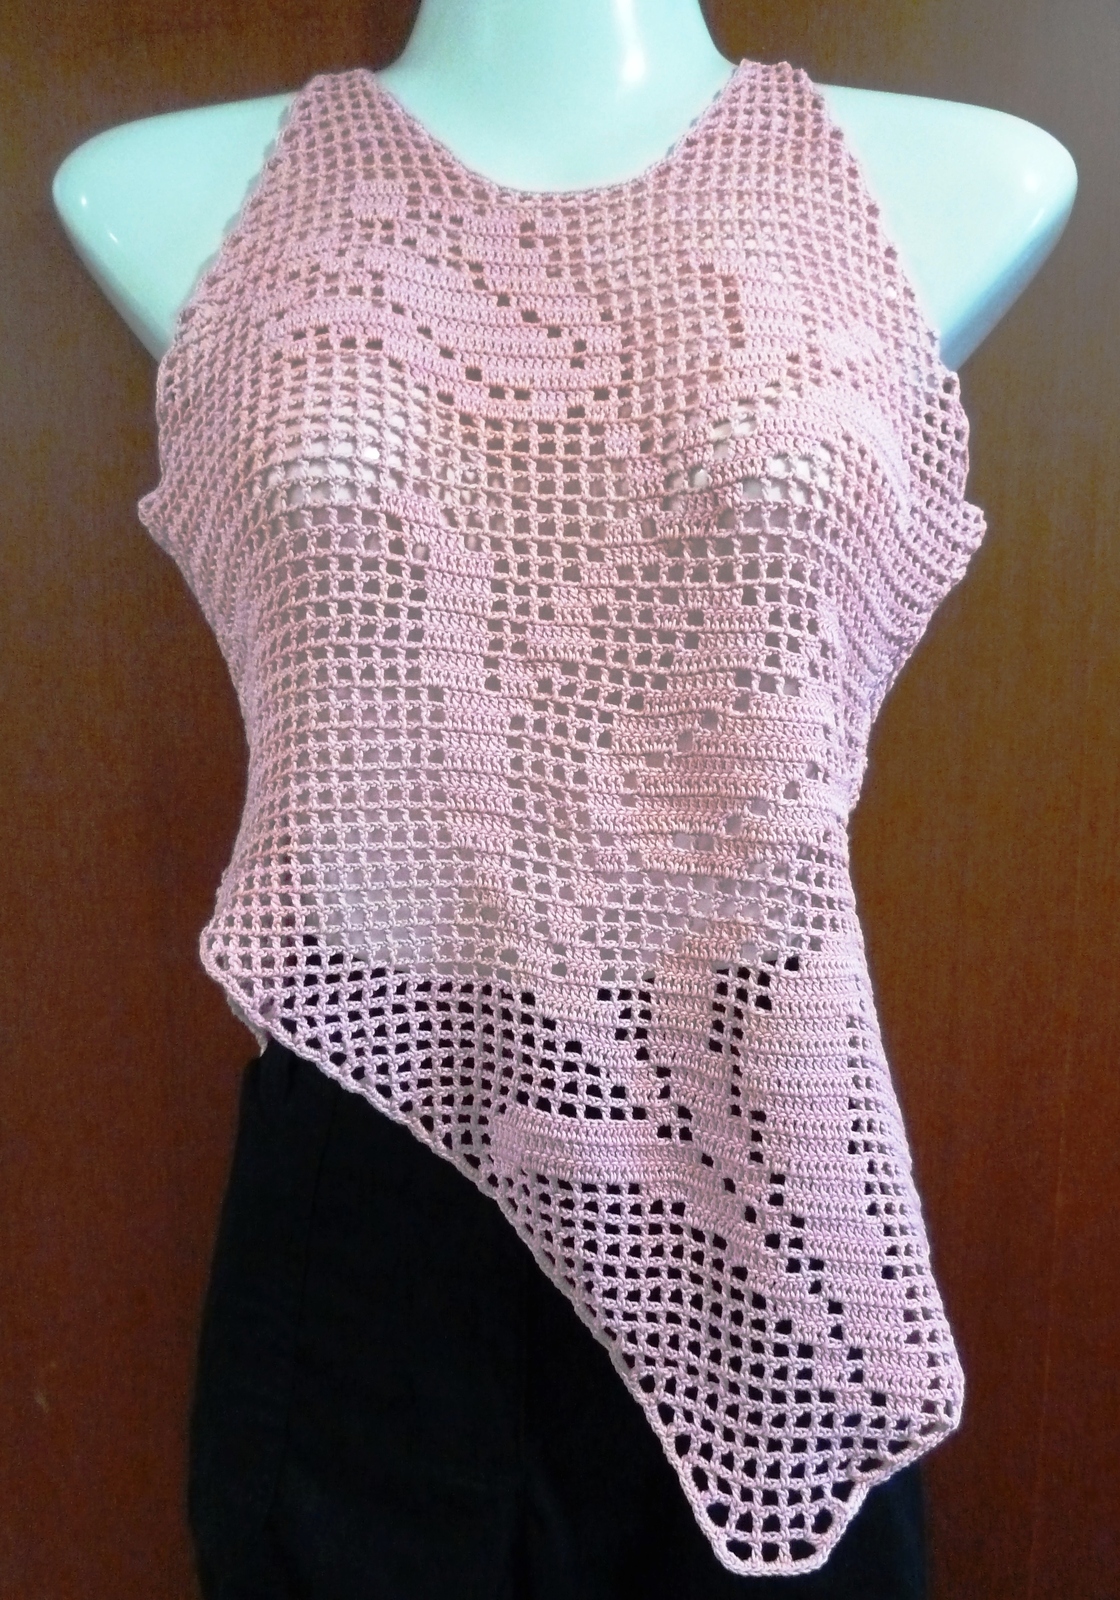 Pink Crochet Sleeveless Top With Flower Design/Pink Filet Crochet Top ...